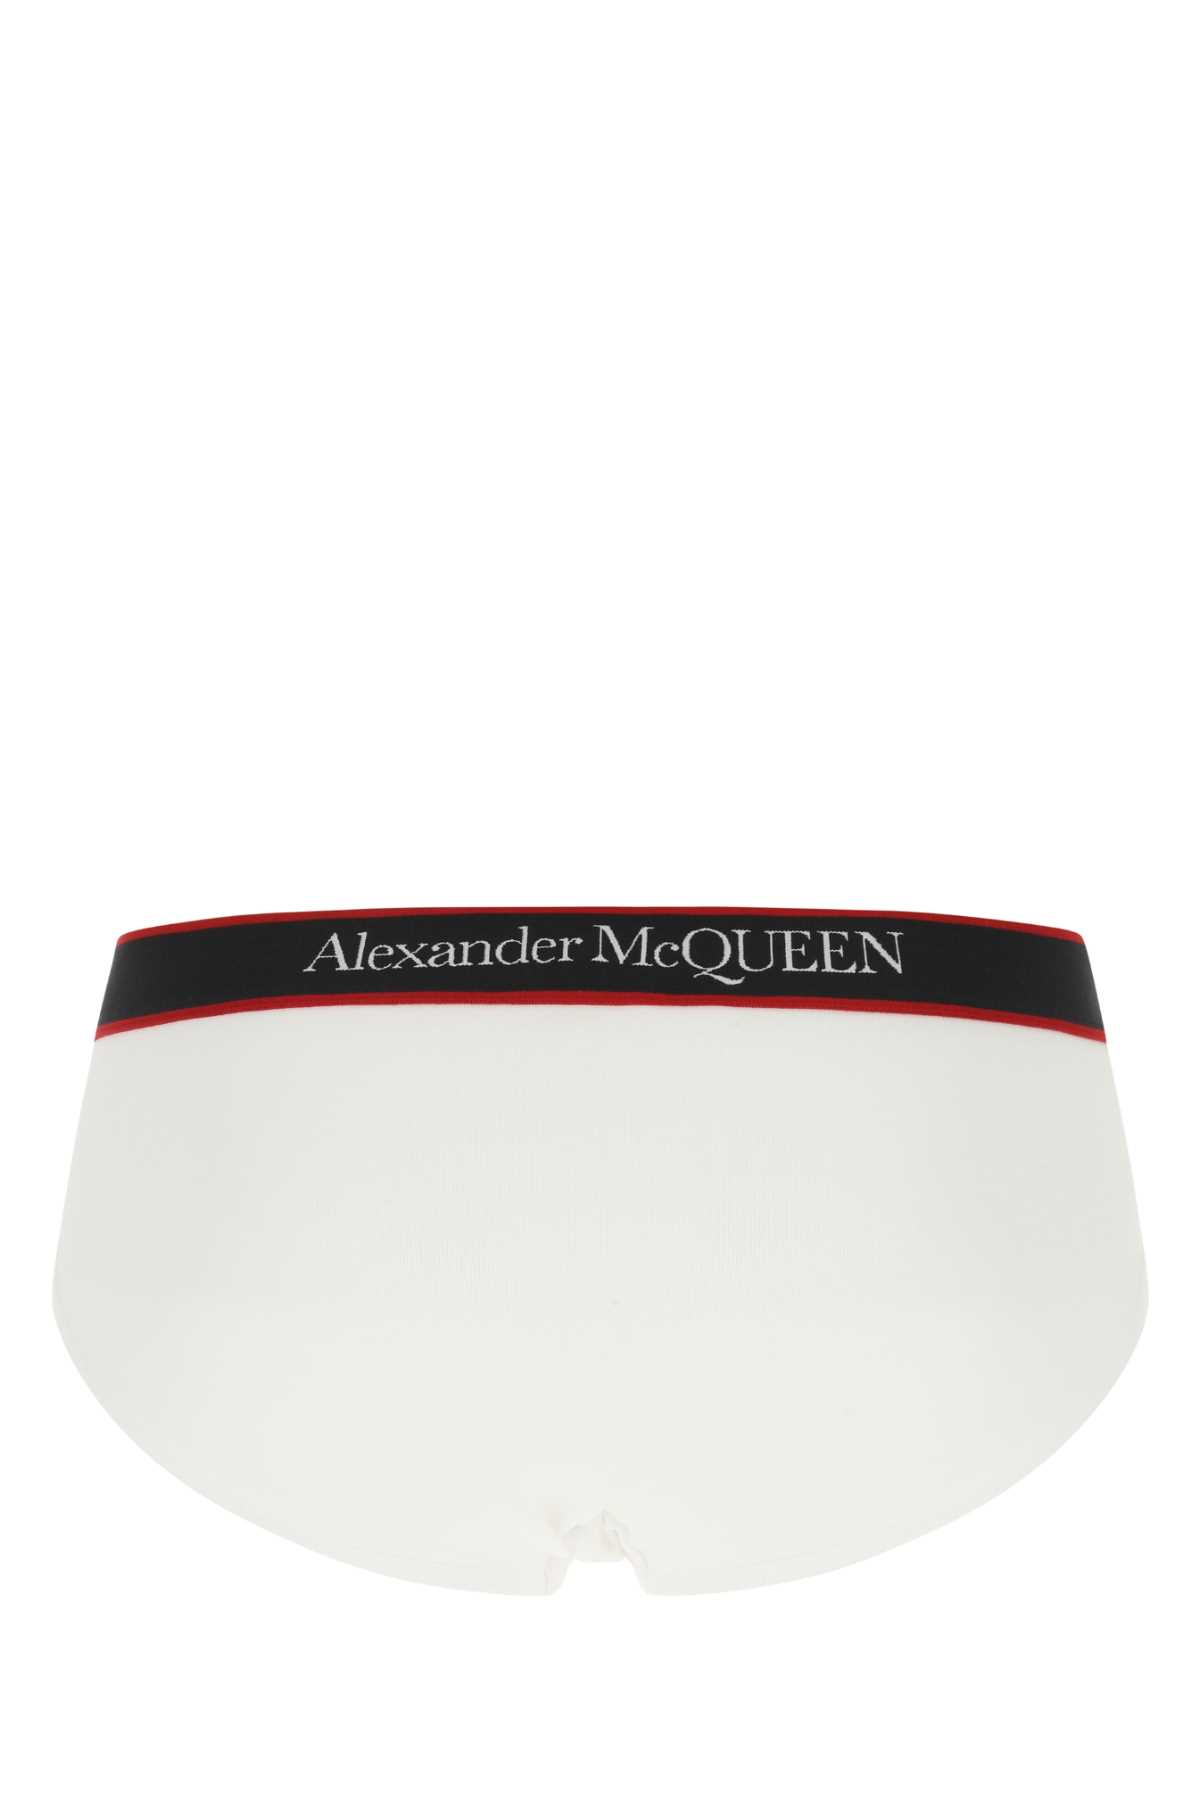 Alexander Mcqueen White Stretch Cotton Slip In 9074